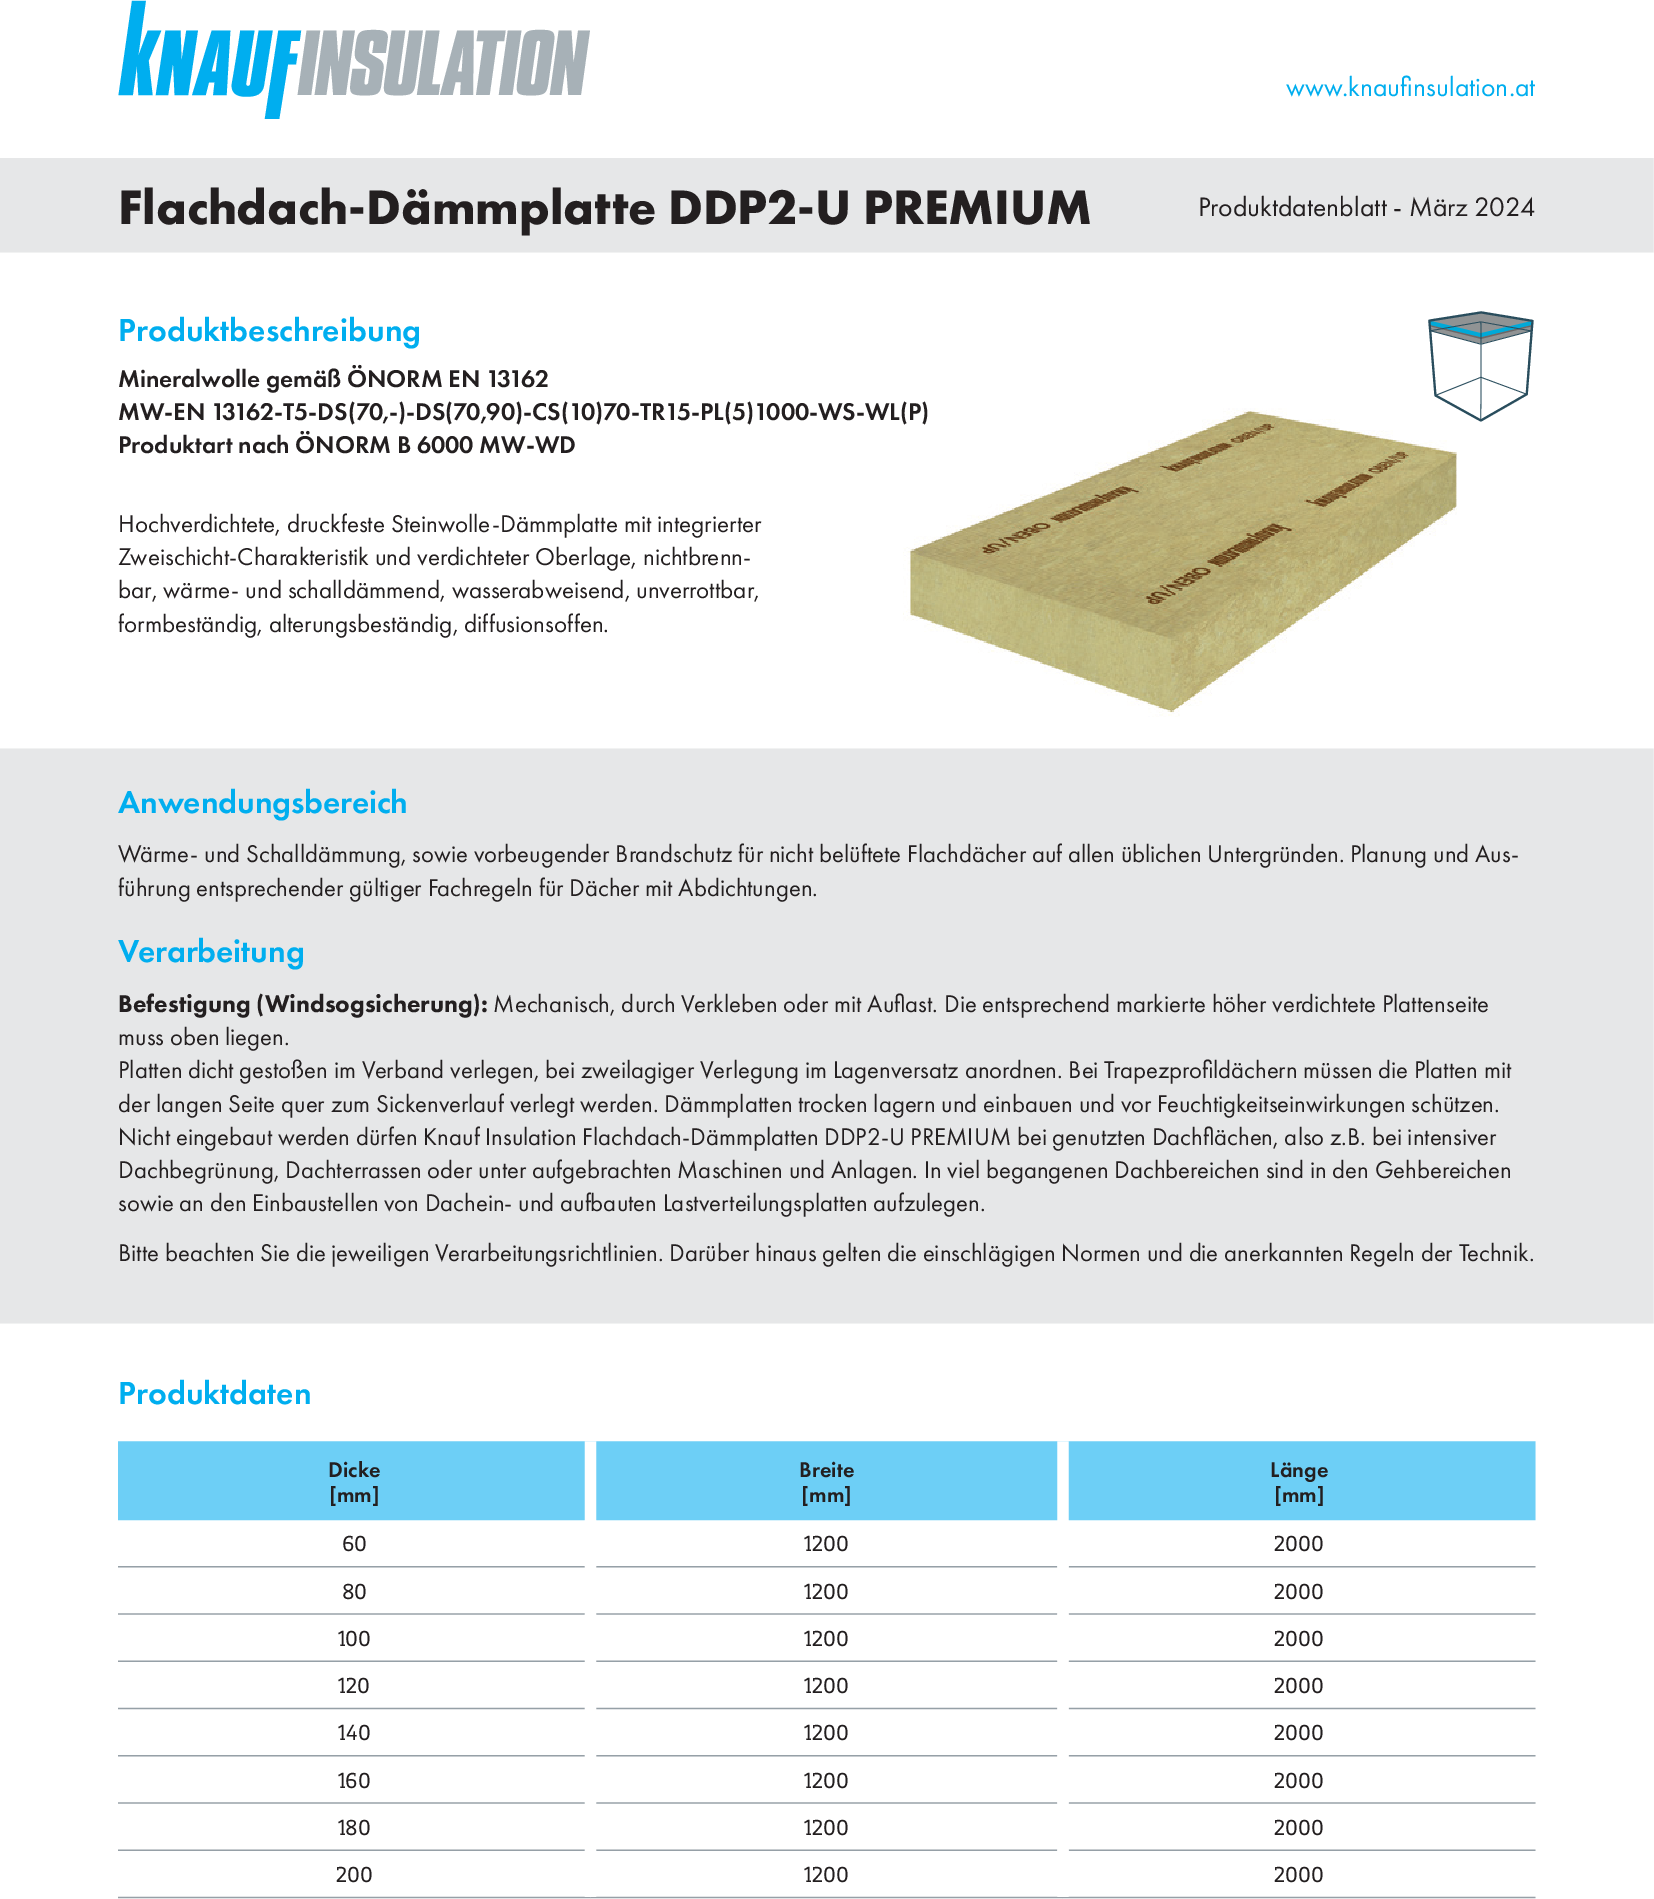 Flachdach-Dämmplatte DDP2-U PREMIUM, Produktdatenblatt